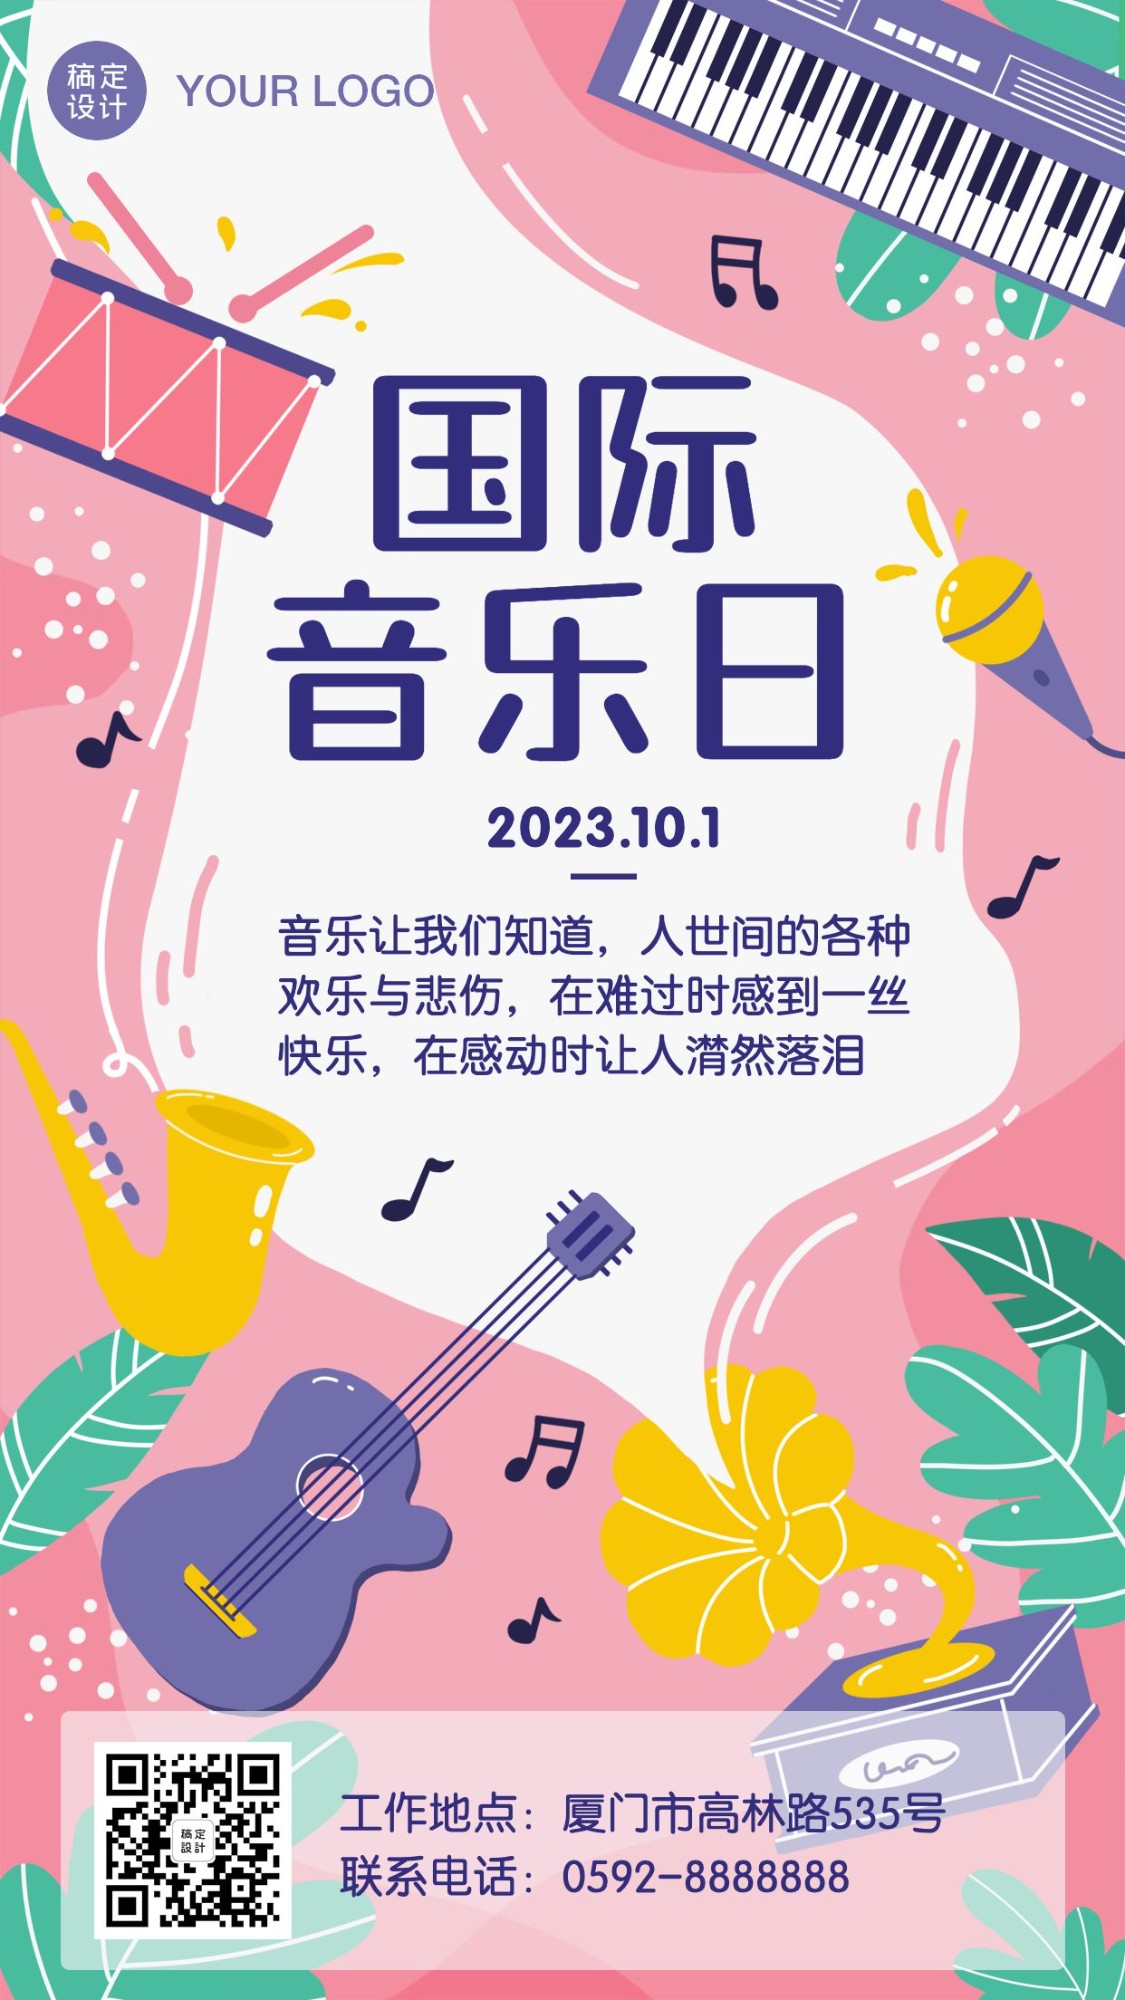 国际音乐日活动营销插画手机海报